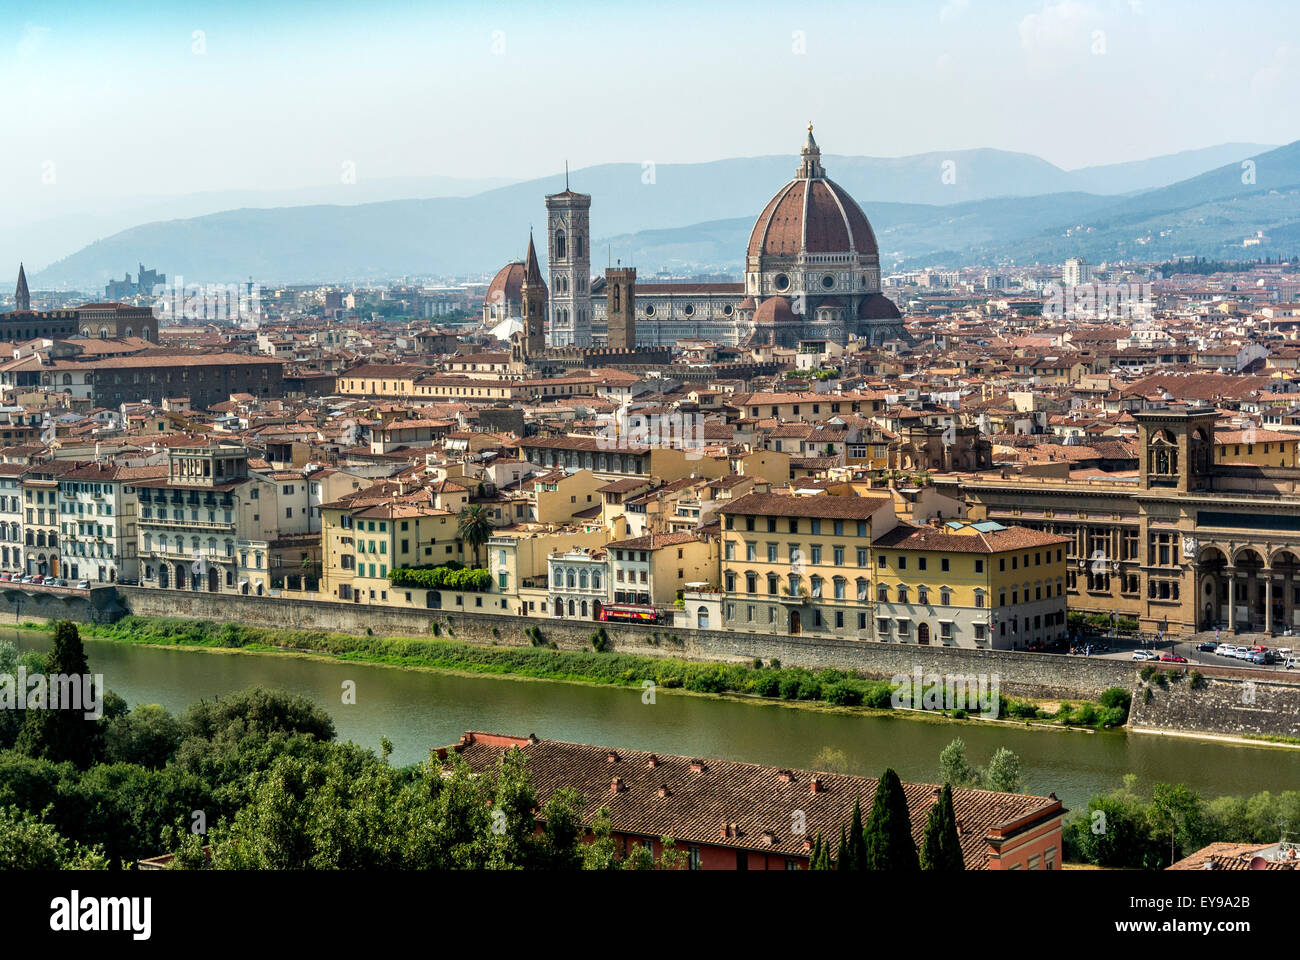 Erhöhte Ansicht der Kathedrale von Florenz vom Südufer des Flusses Arno aus gesehen, Blick nach Norden. Florenz, Italien. Stockfoto